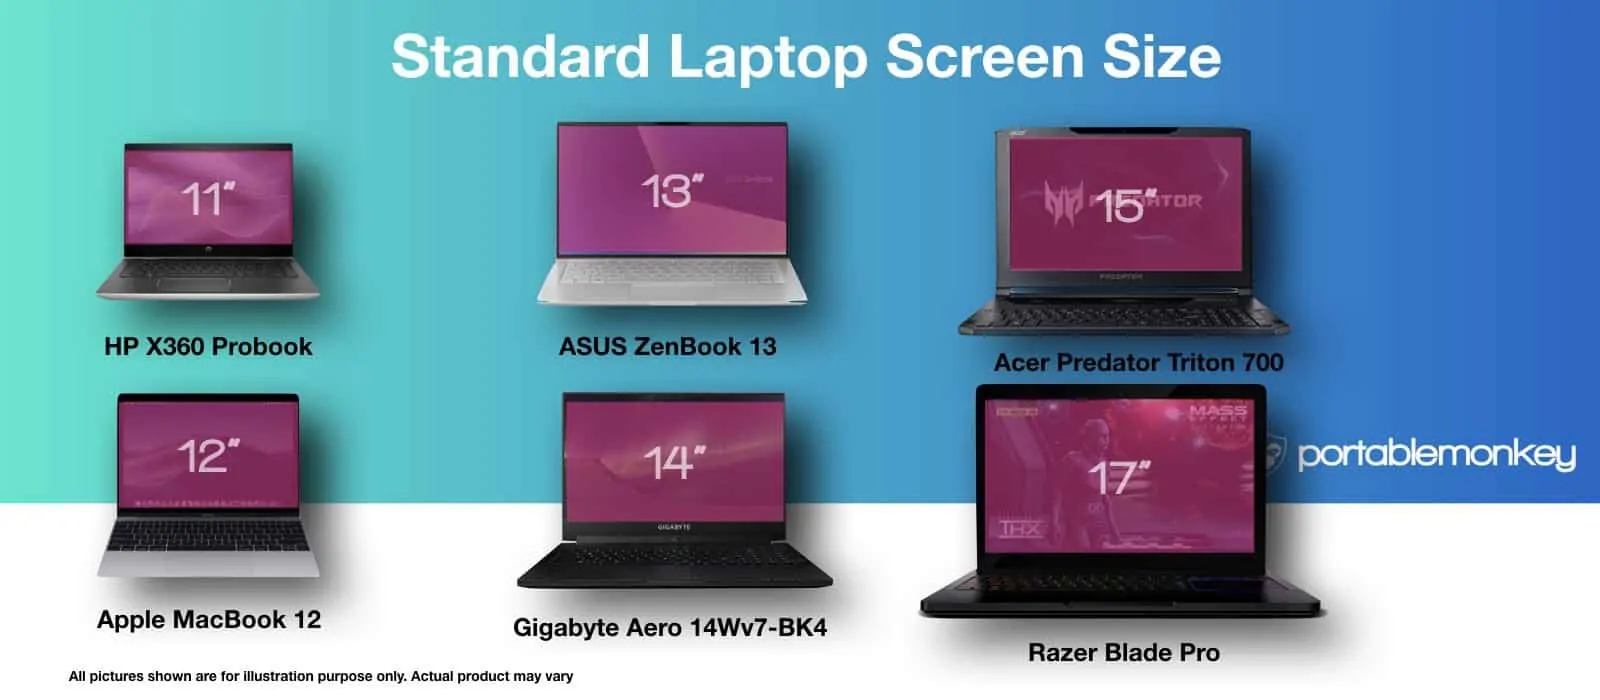 Les différentes tailles d'écrans de PC portables